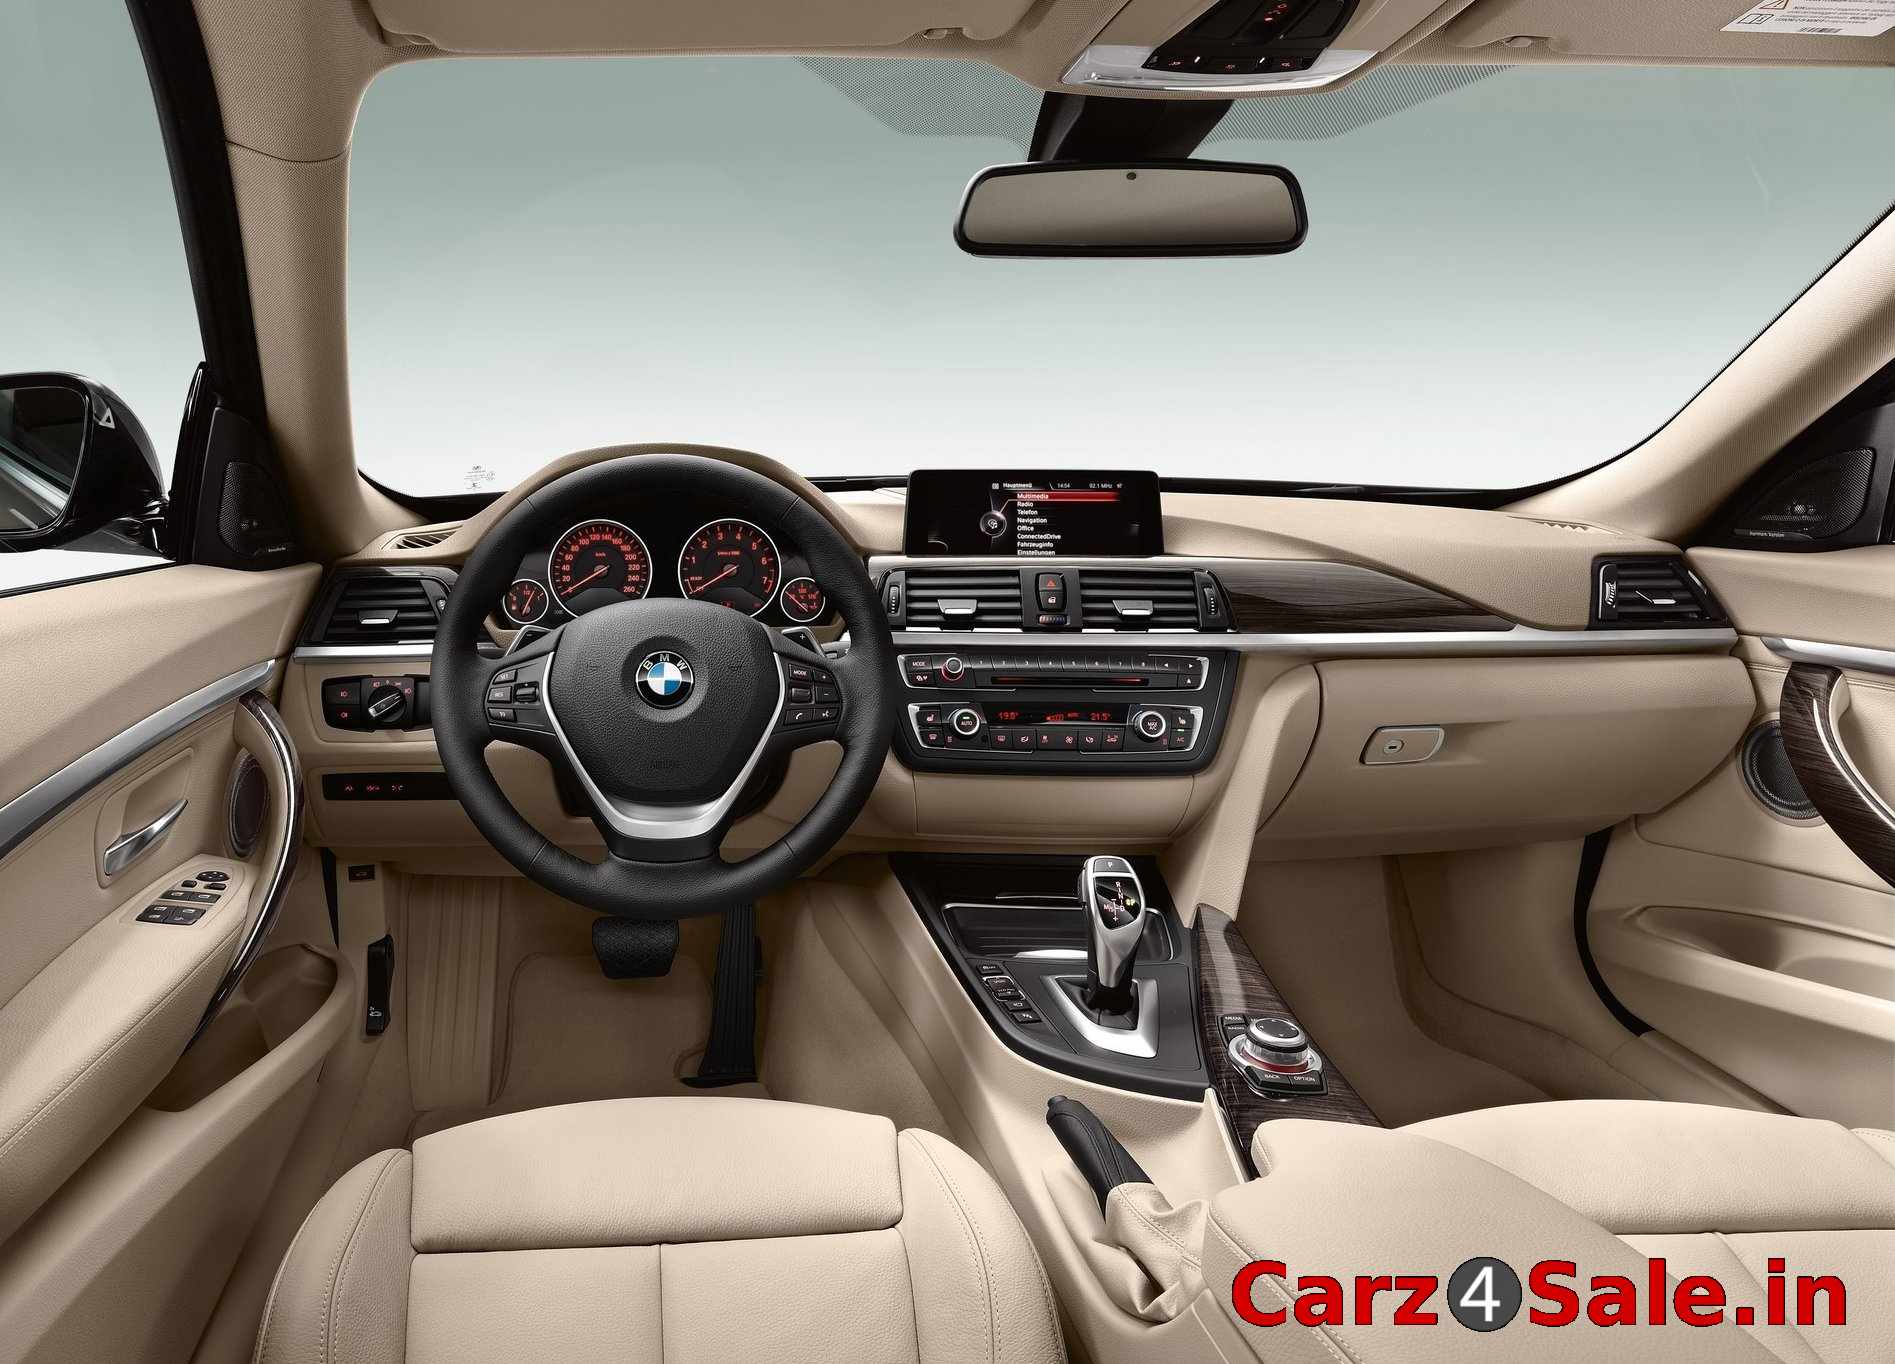 BMW 3 series GT interior